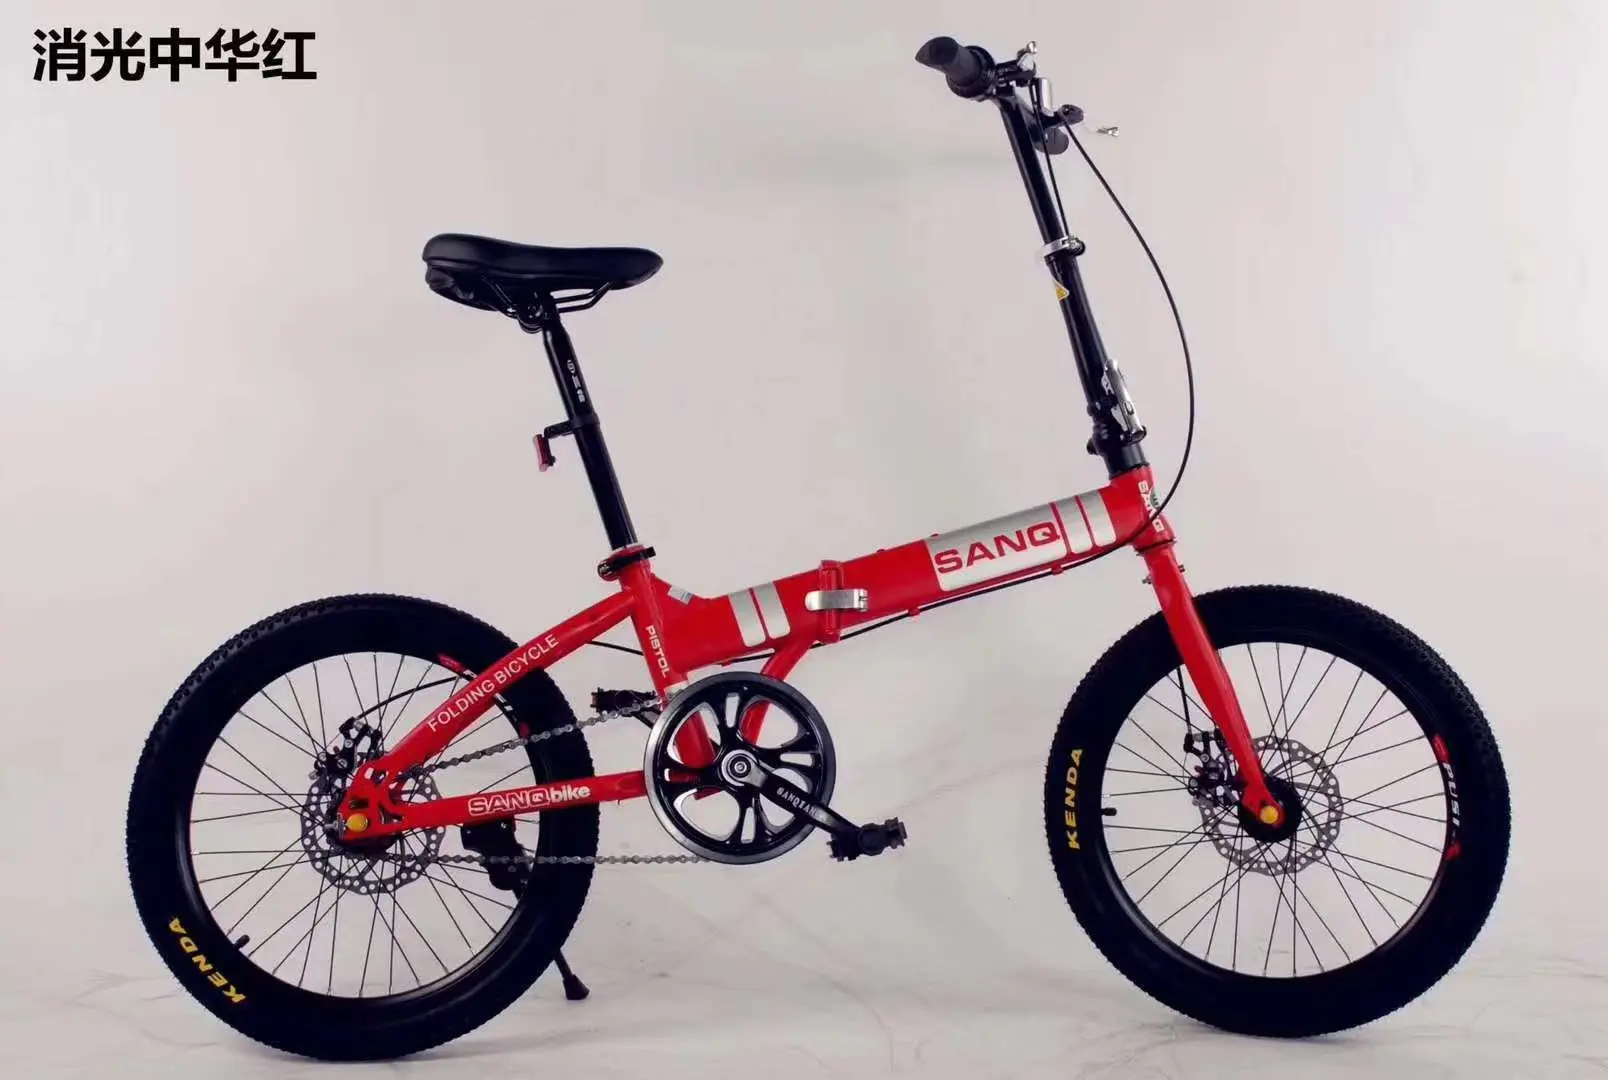 16 inch wheel folding bike